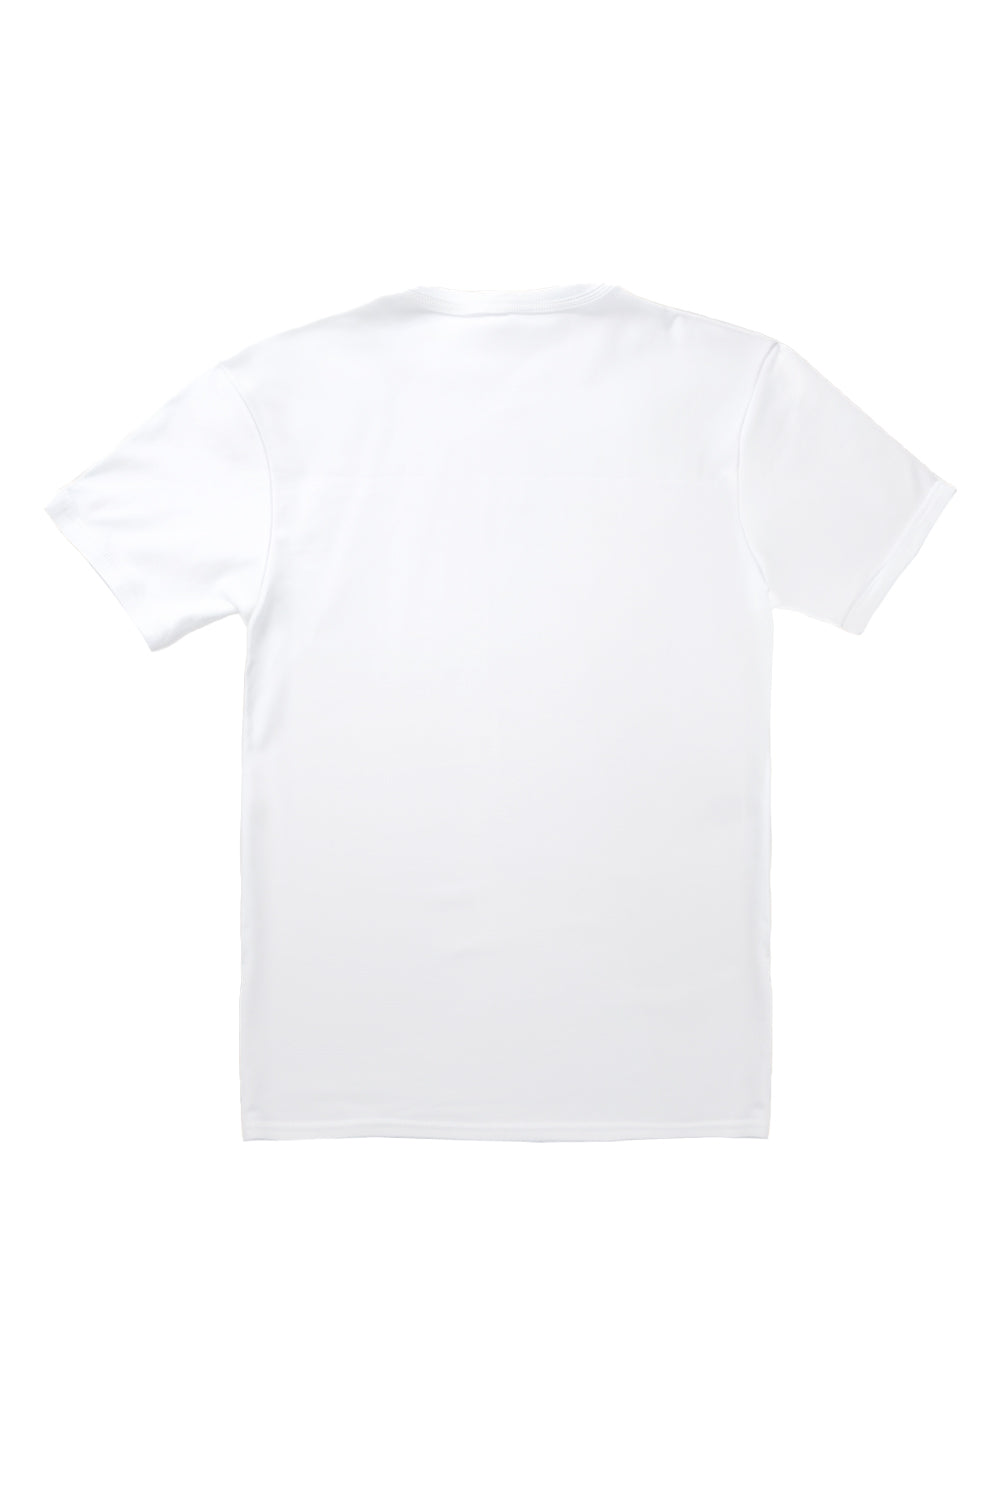 Palm Springs Teddy T-Shirt in White (Custom Packs)